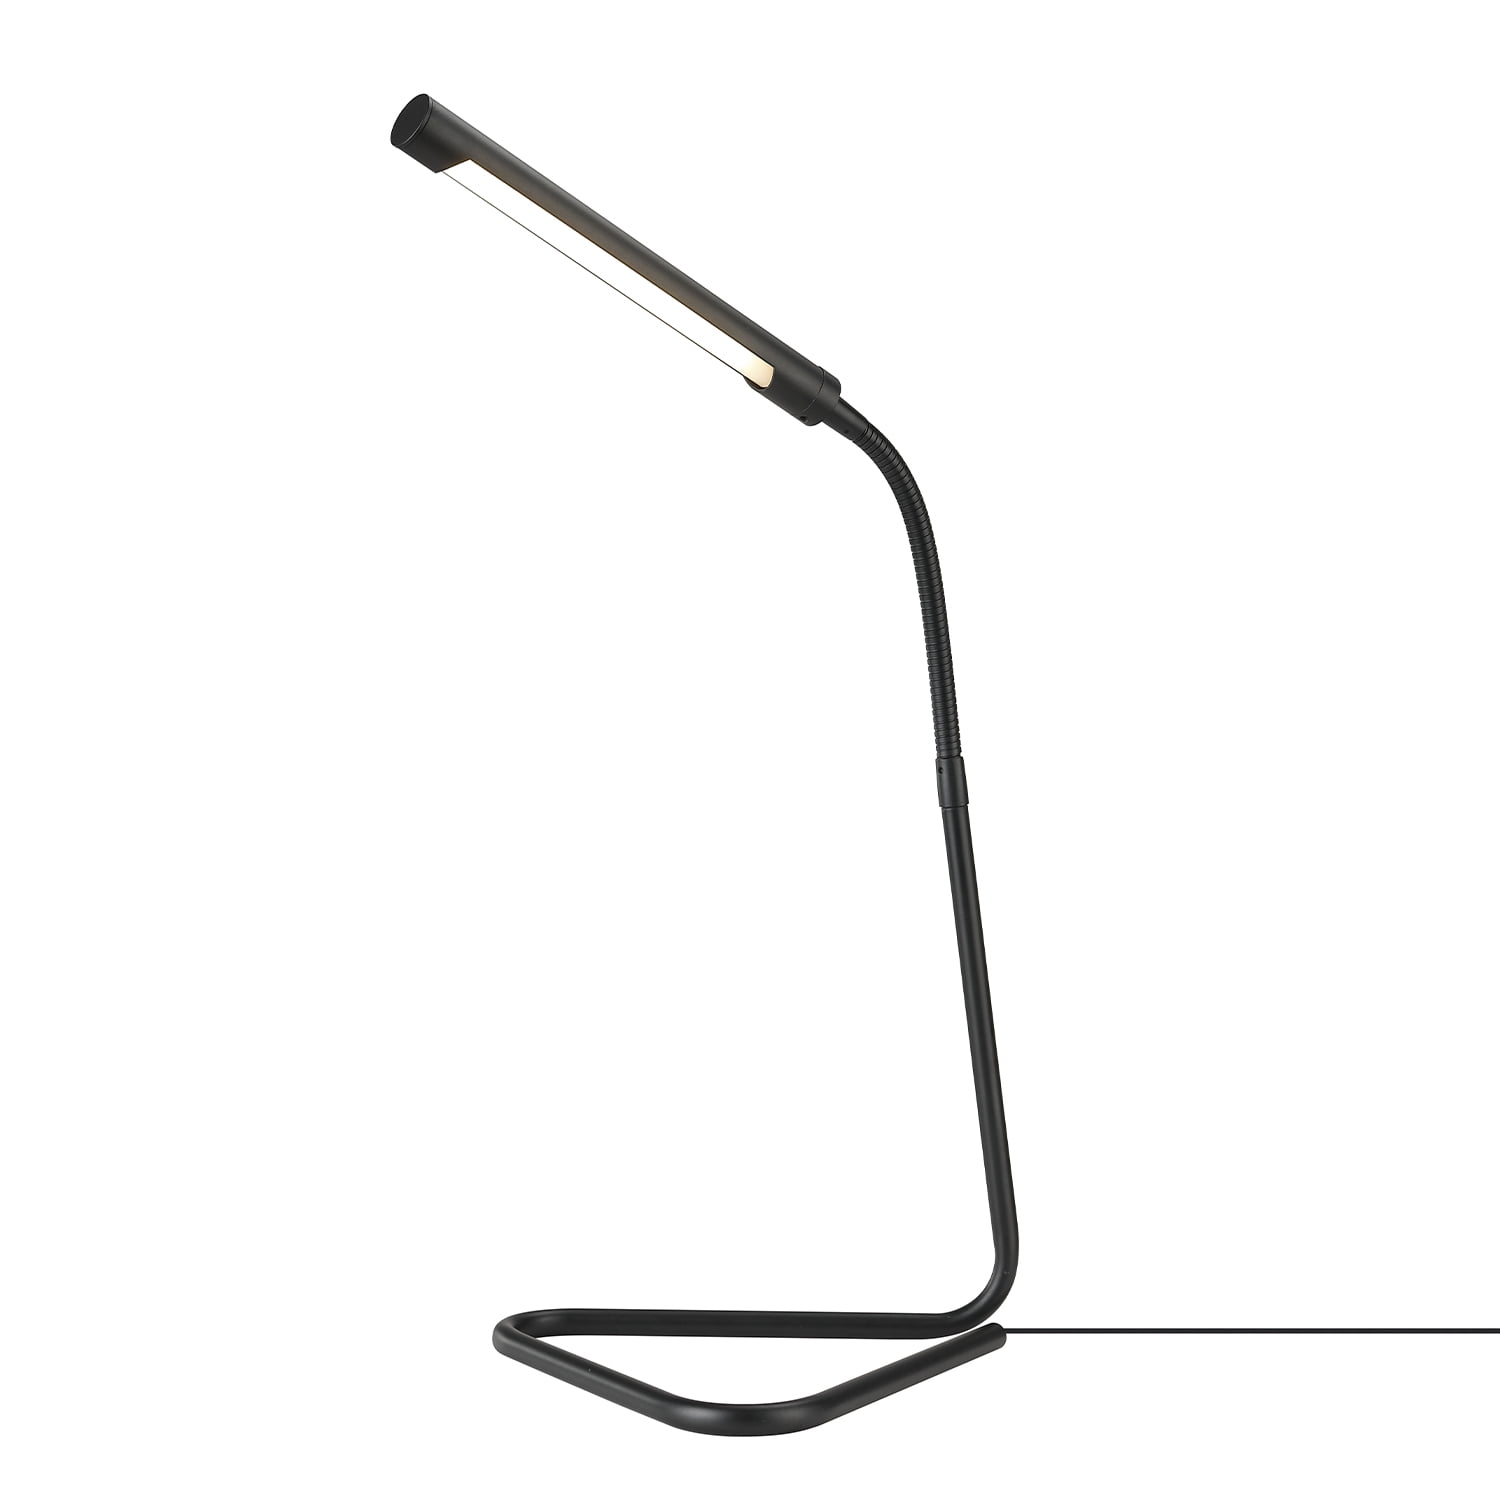 Lampe de bureau en métal Belmont de Globe Electric avec port USB, 17 po,  noir et laiton 52095